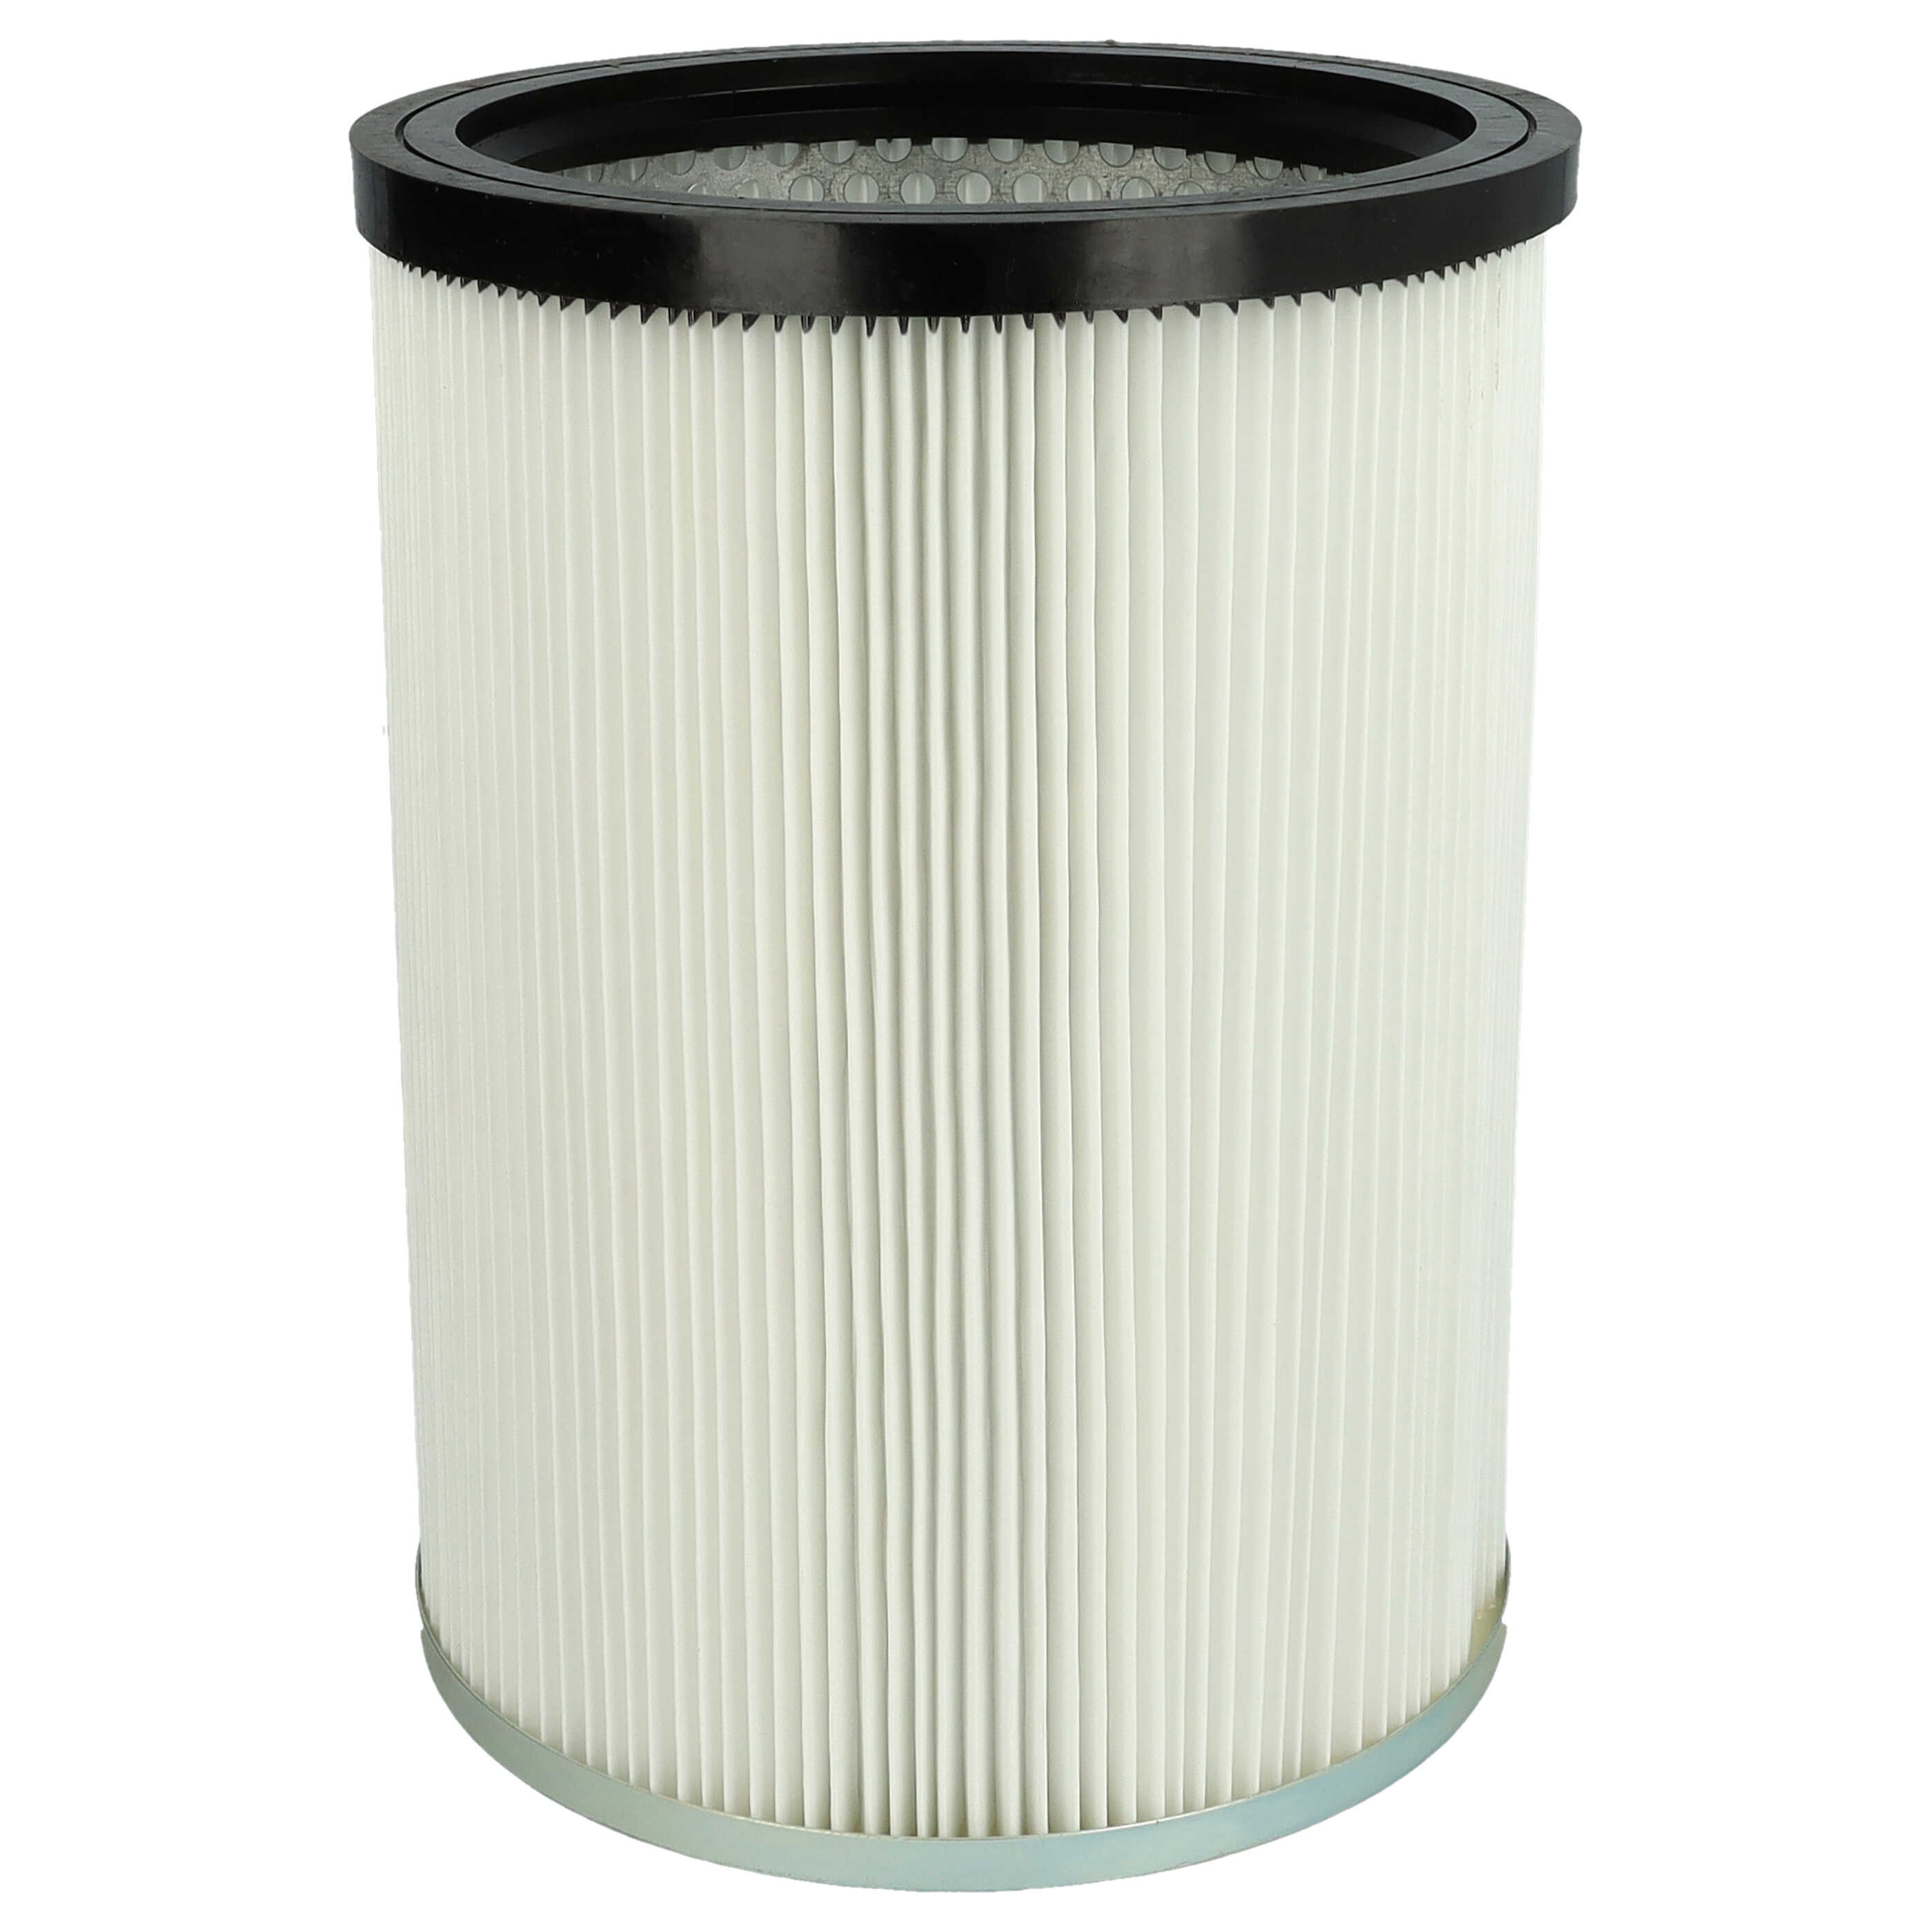 Filtro reemplaza Kärcher 9.770-988.0, 6.907-038.0 para aspiradora filtro de cartucho, blanco